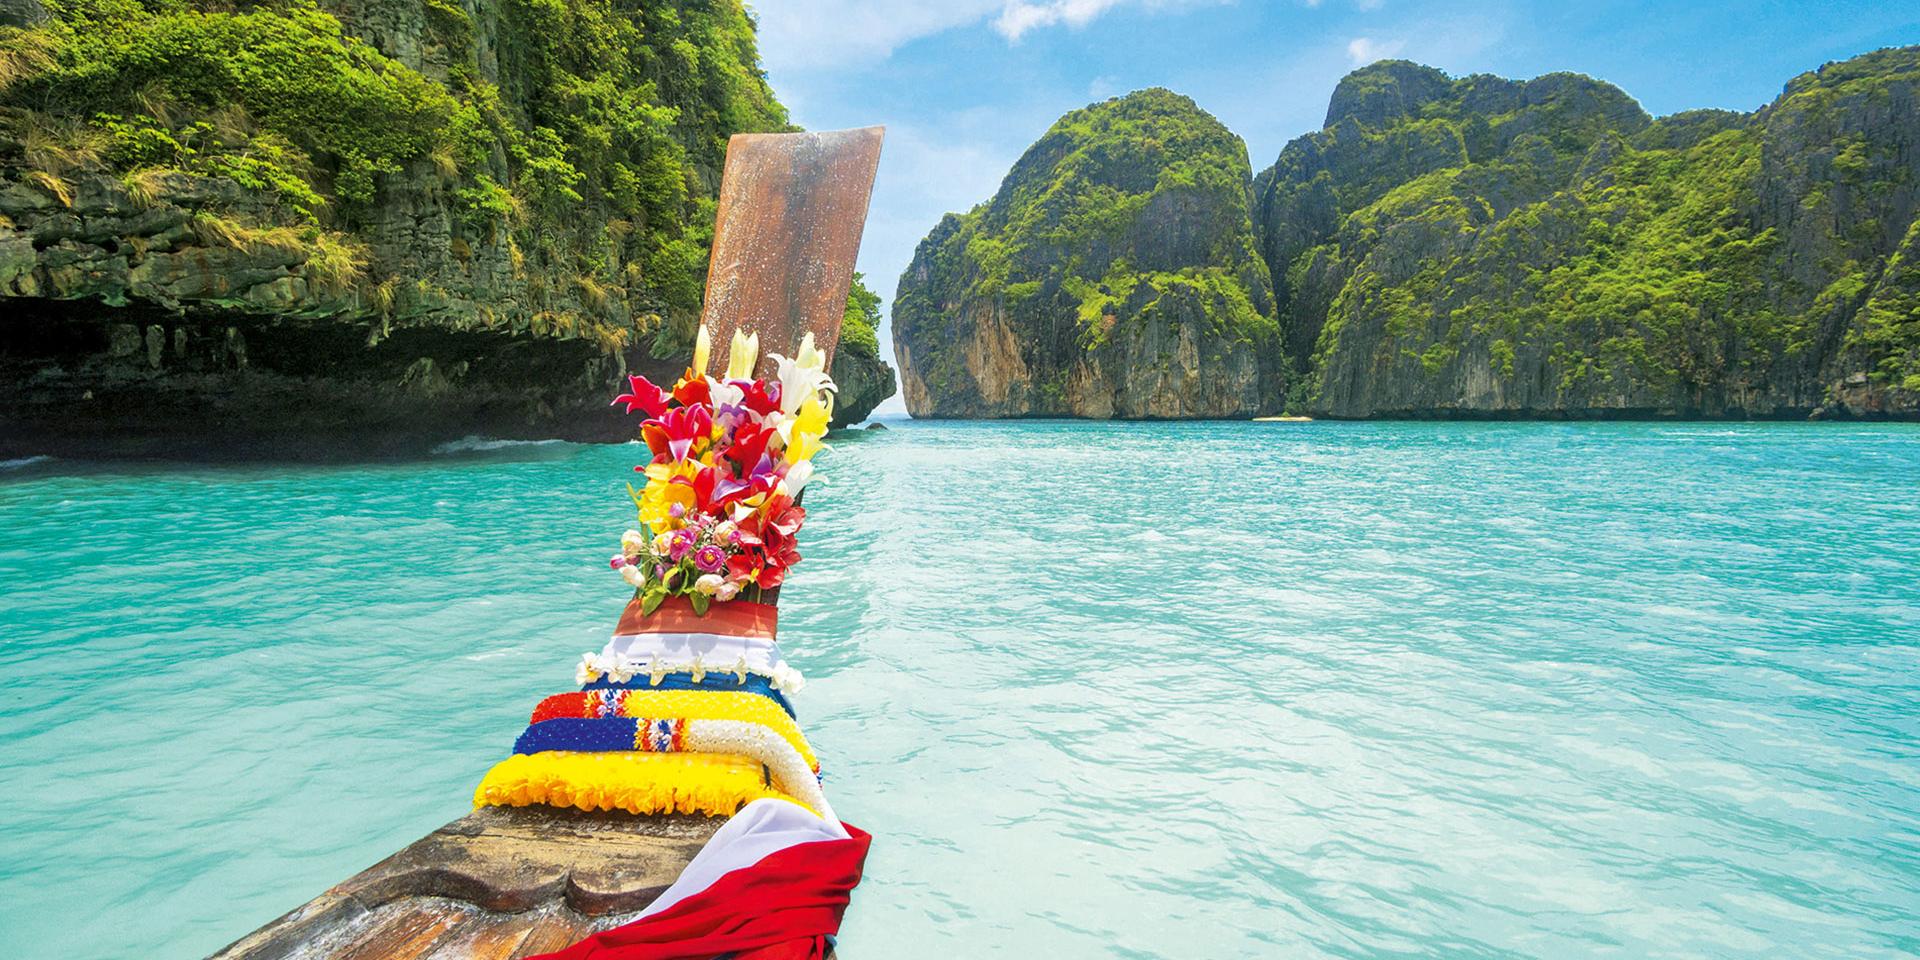  Таиланд купить тур онлайн